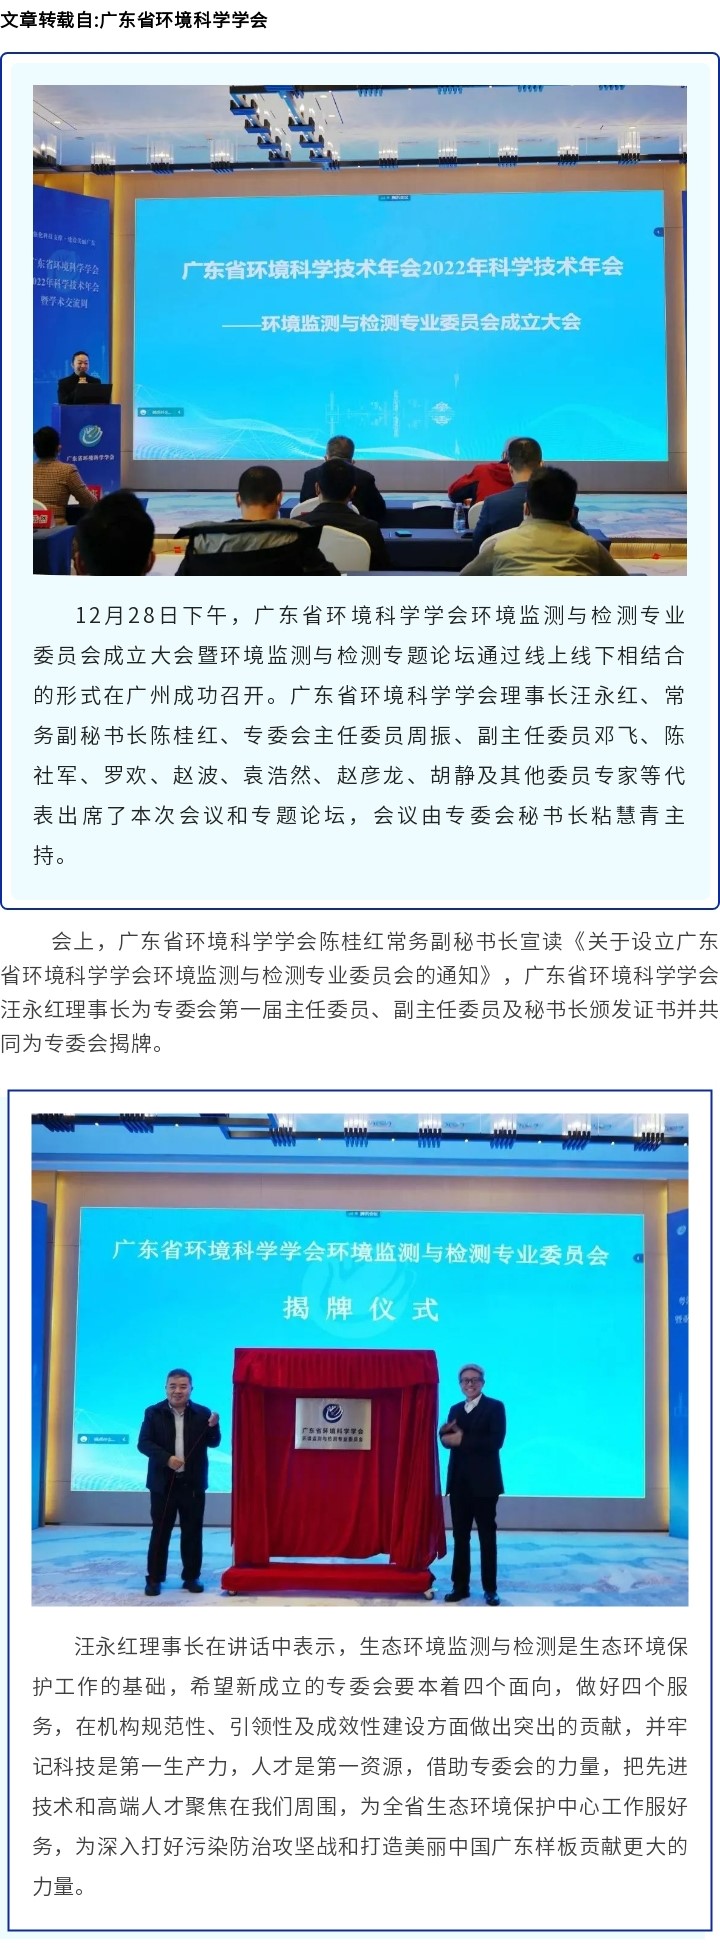 广东省环境科学学会环境监测与检测专业委员会成立大会暨环境监测与检测专题论坛在广州成功召开